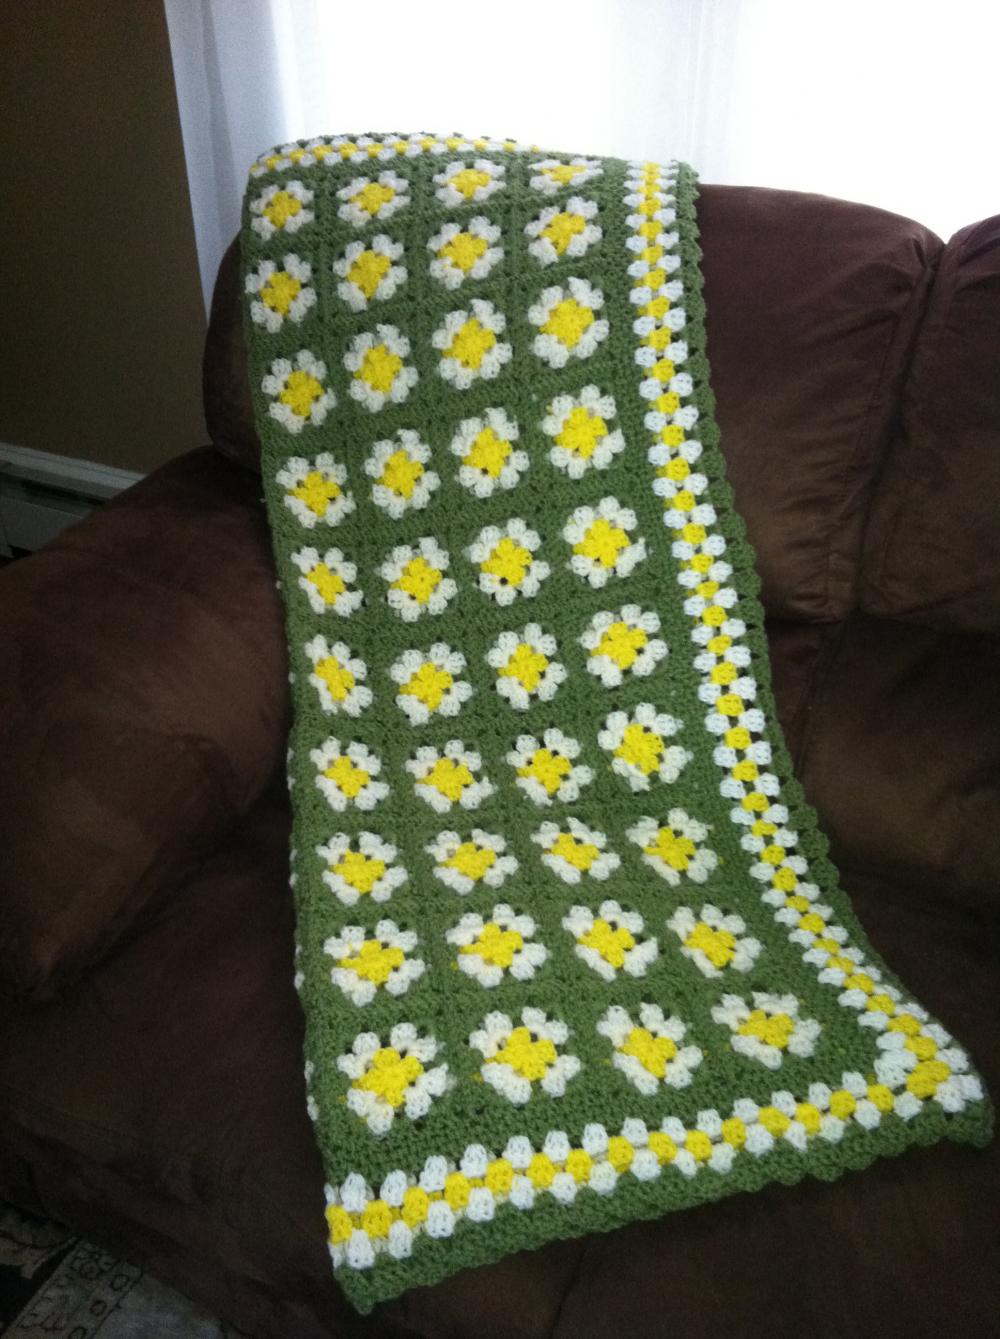 Crochet Daisy Inspired Granny Square Crochet Afghan Blanket